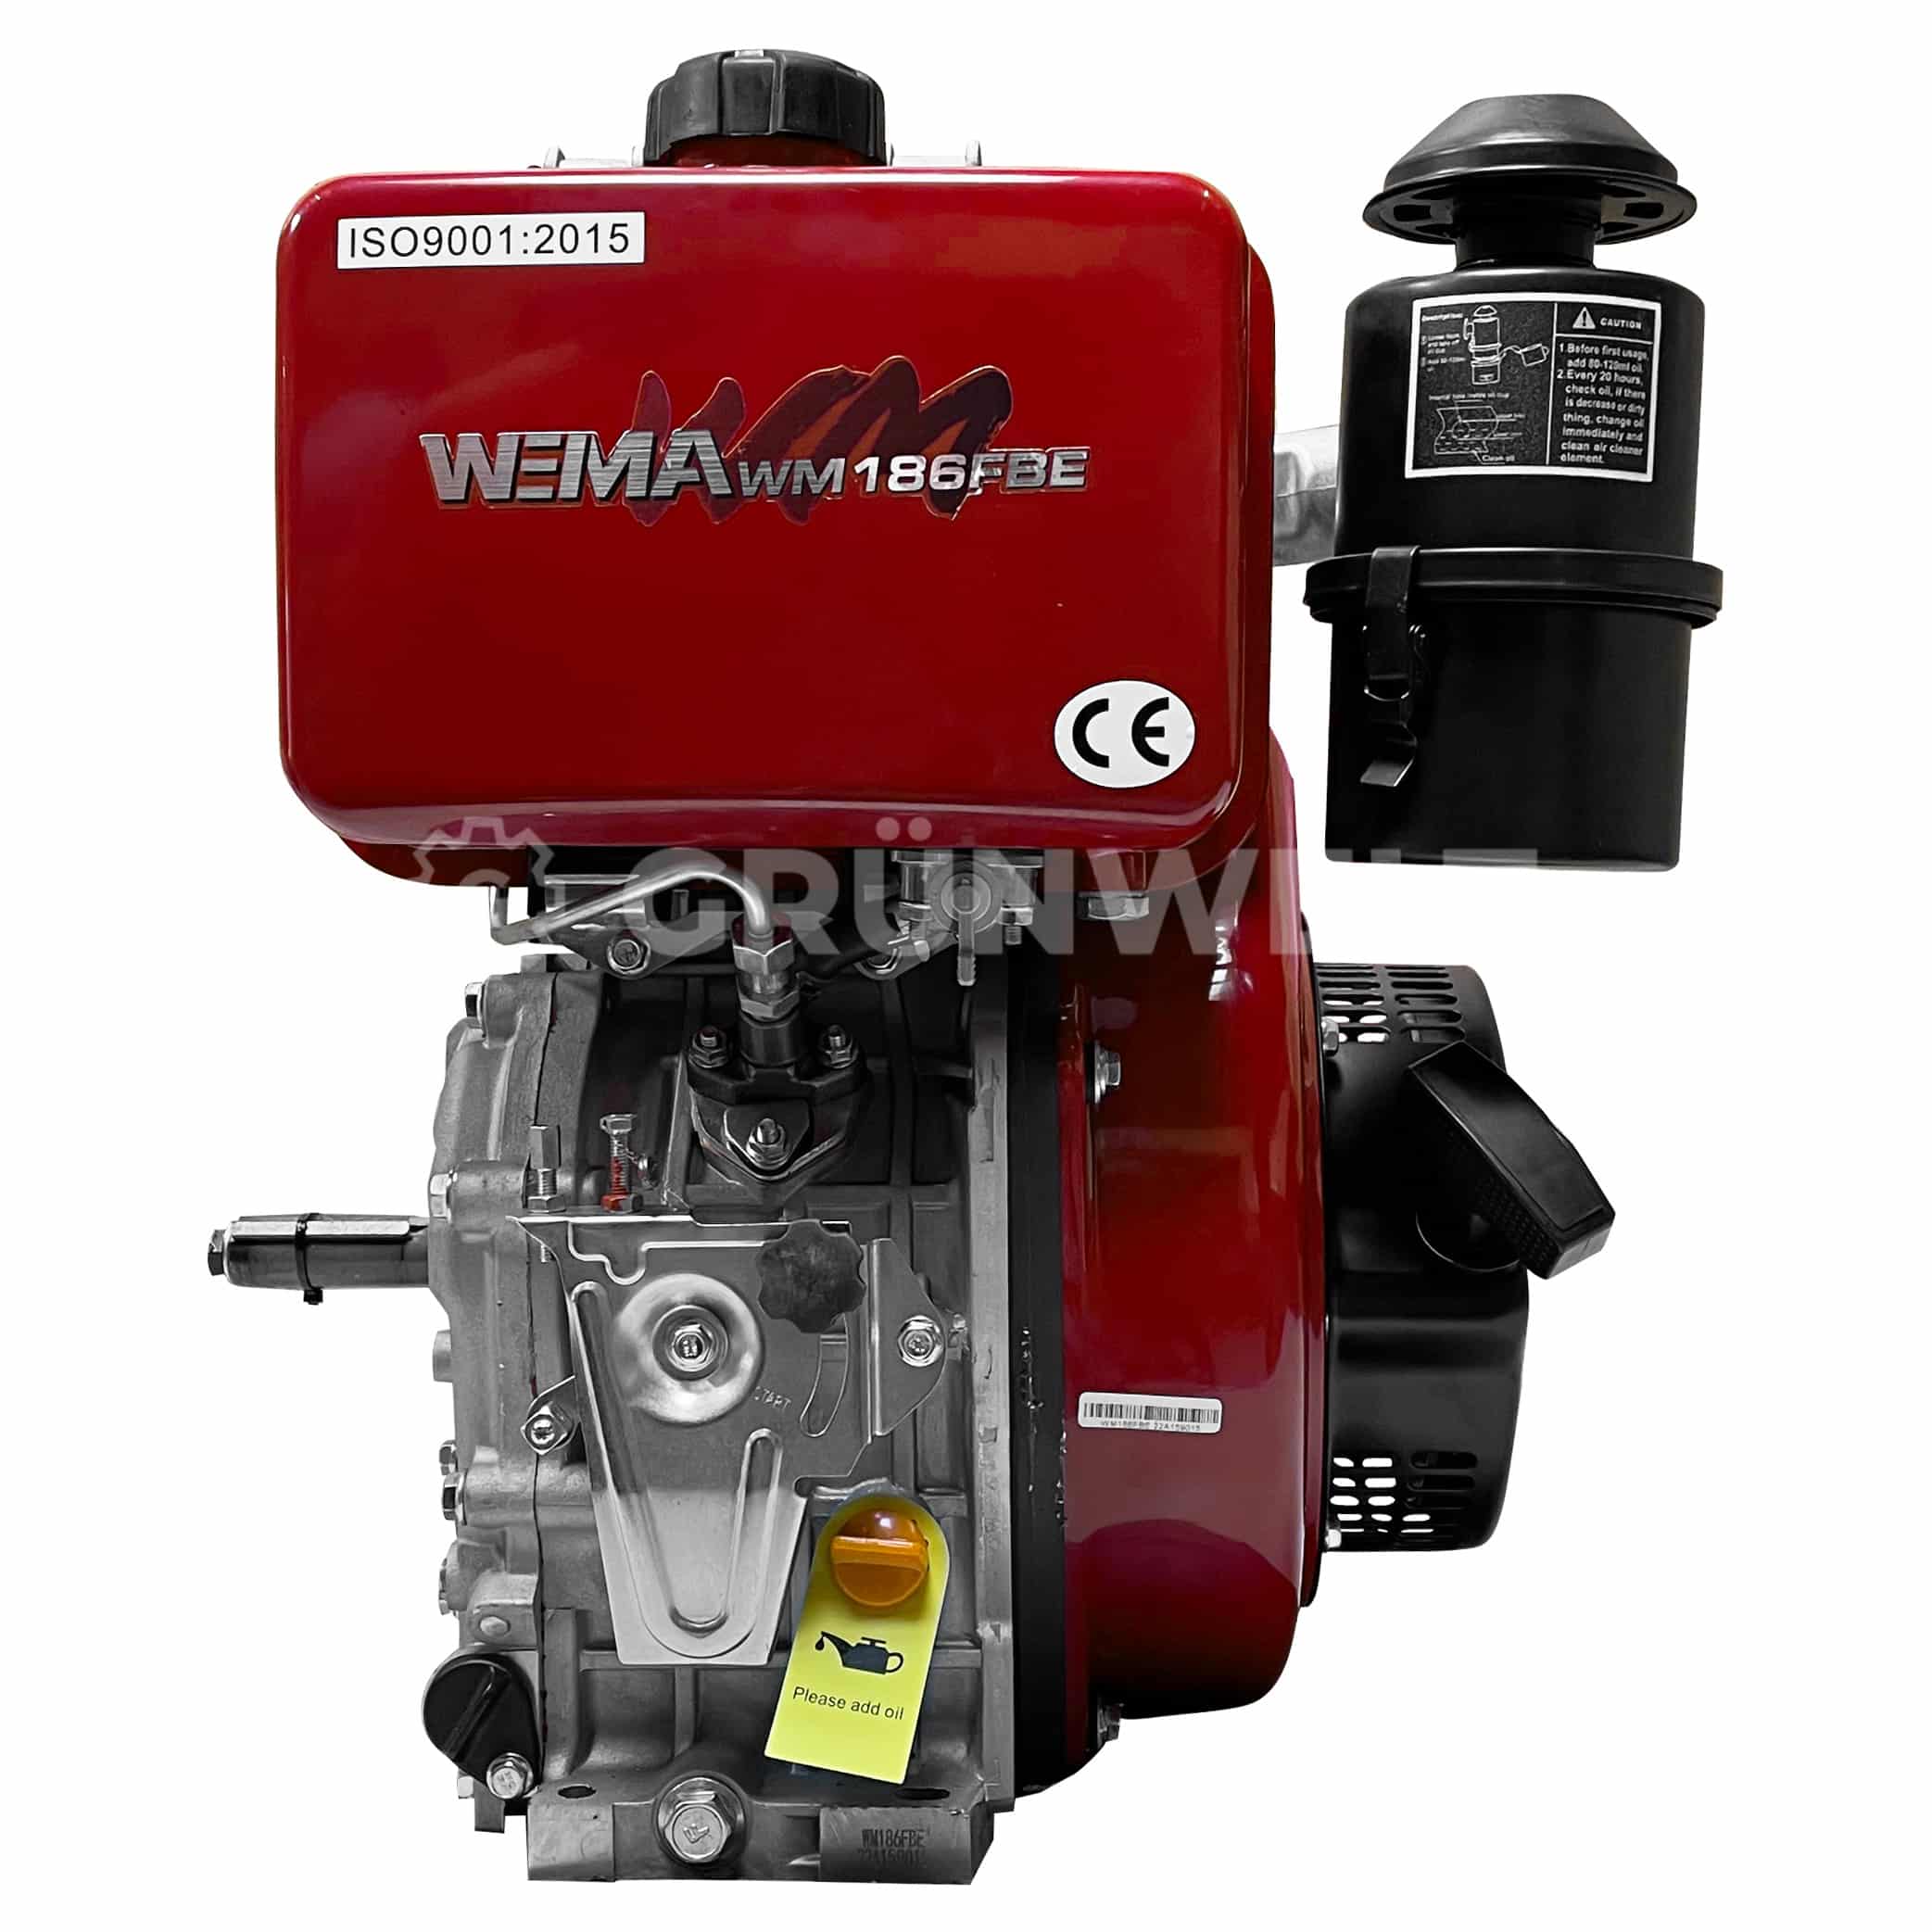 Dieselmotor Weima WM186FBE mit Ölbadluftfilter - Gruenwelt Shop